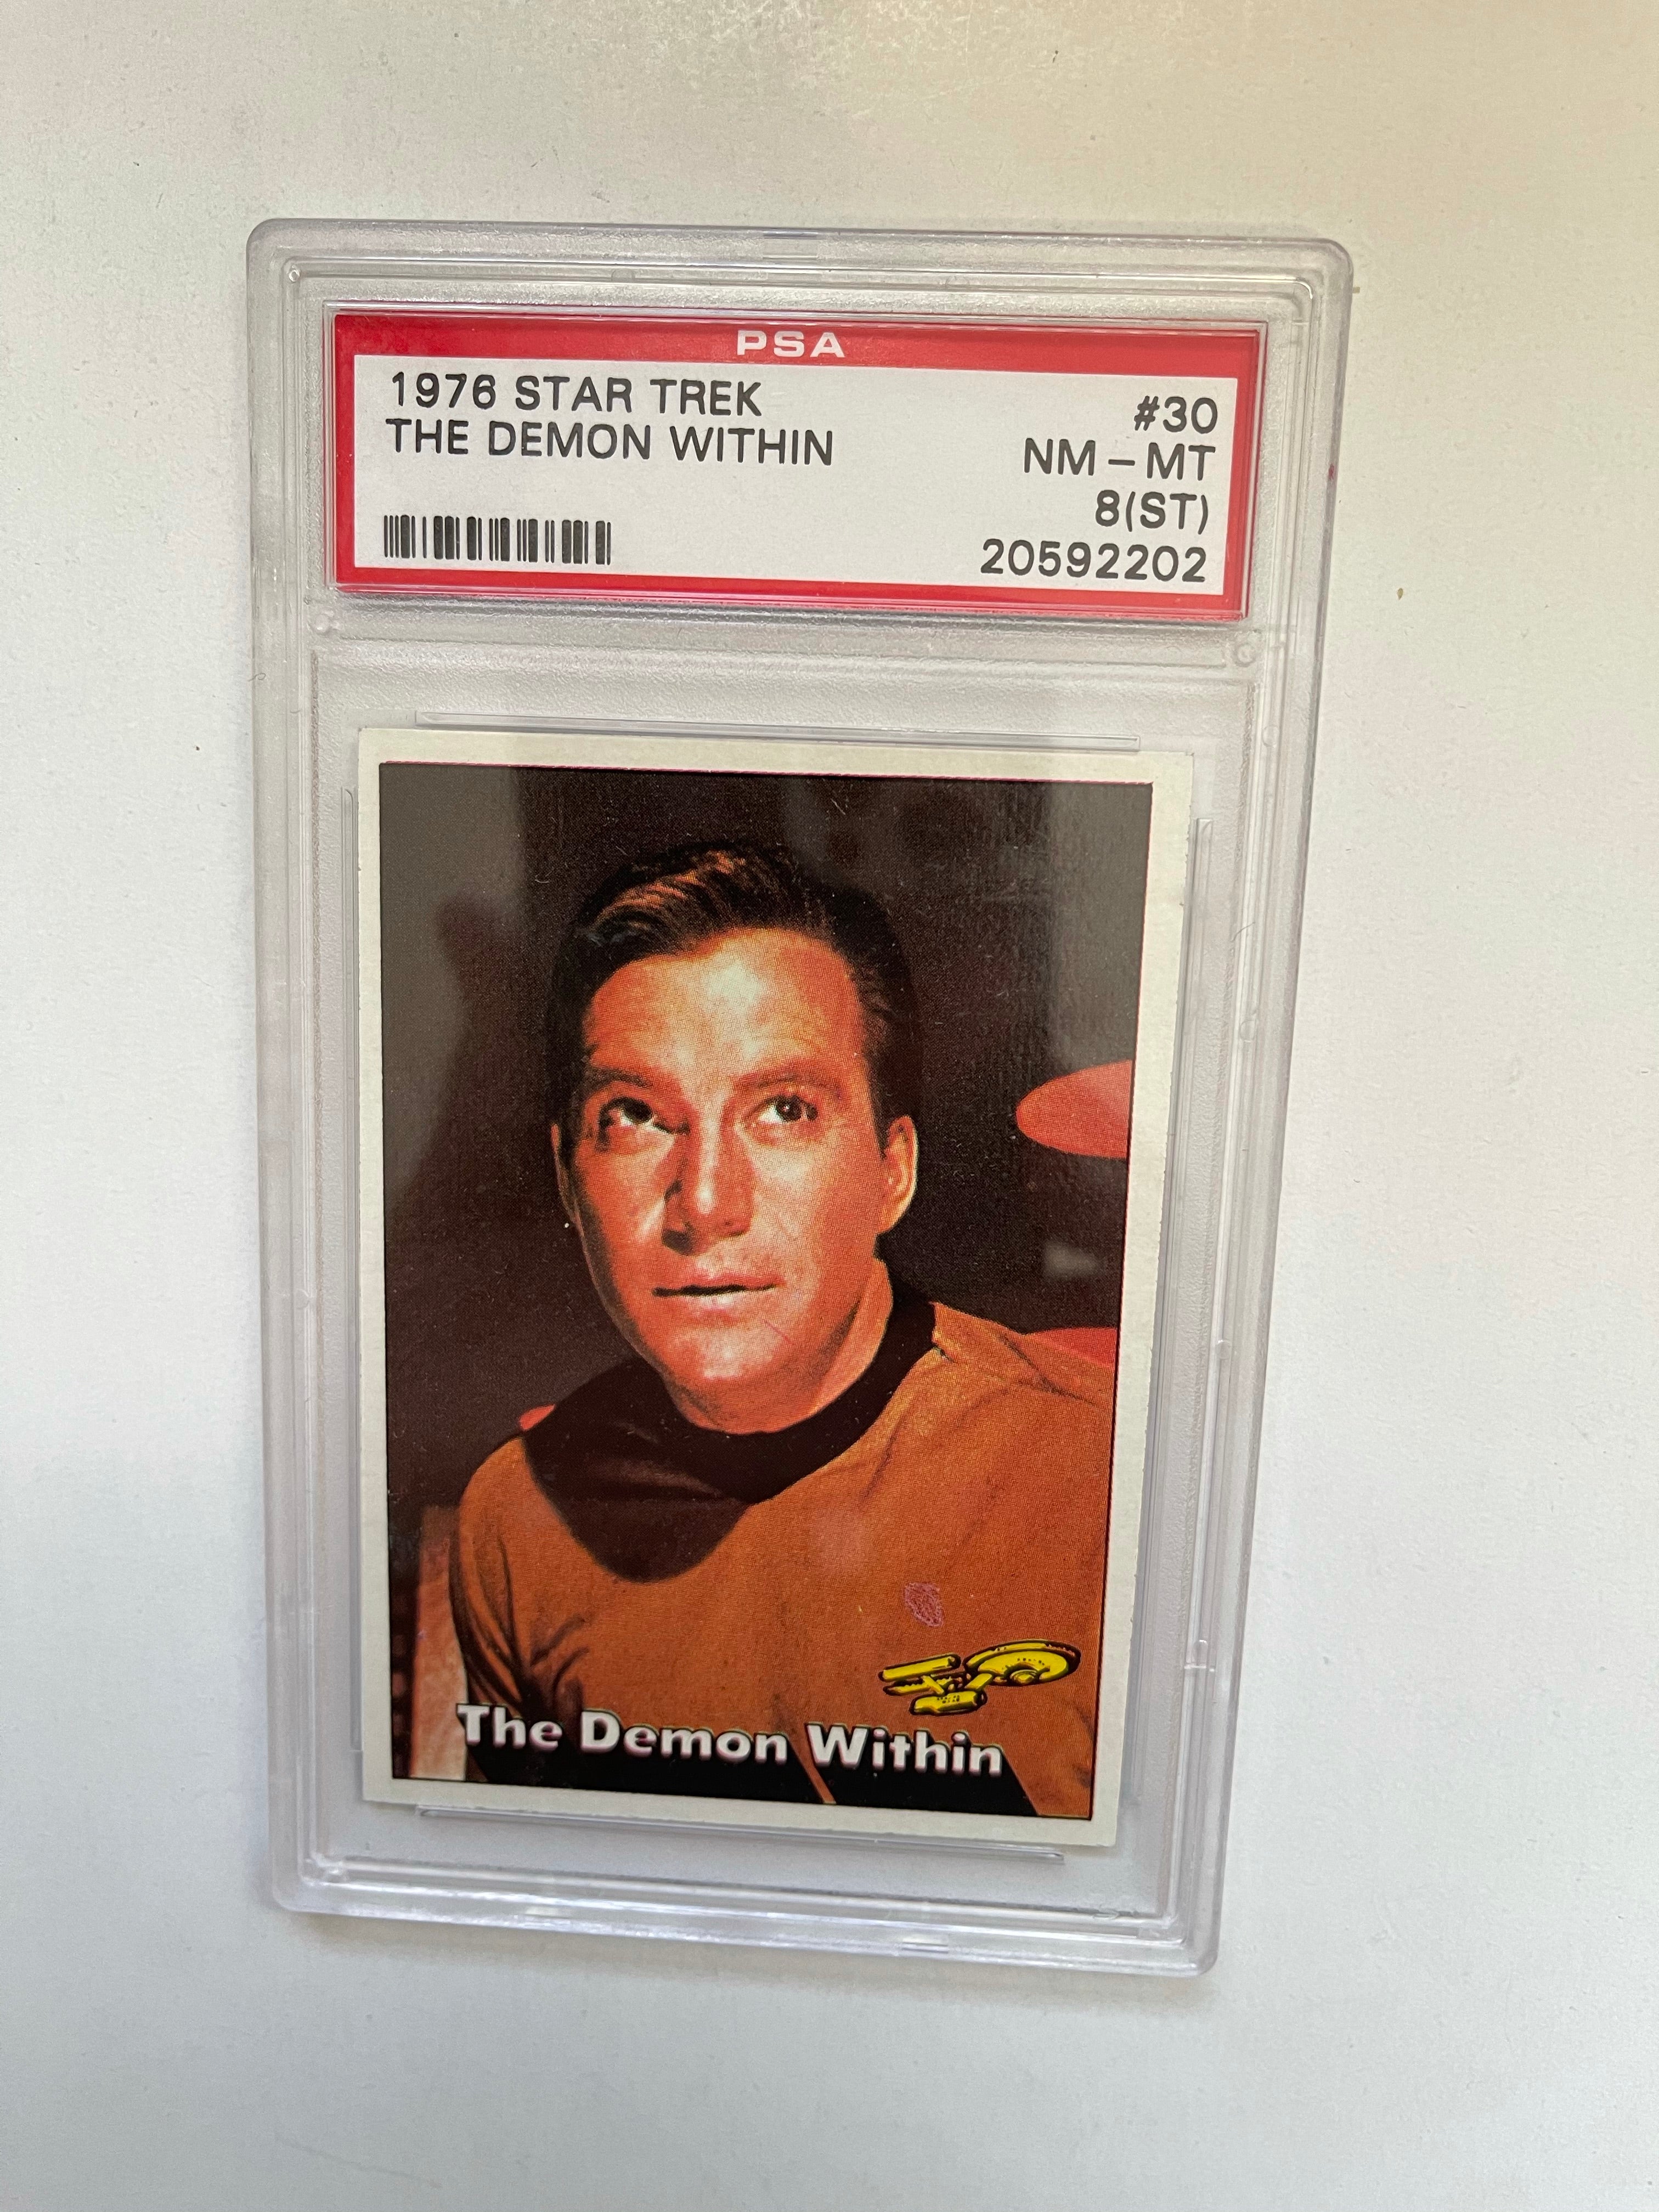 Star Trek Captain Kirk PSA 8 graded Star Trek card 1976